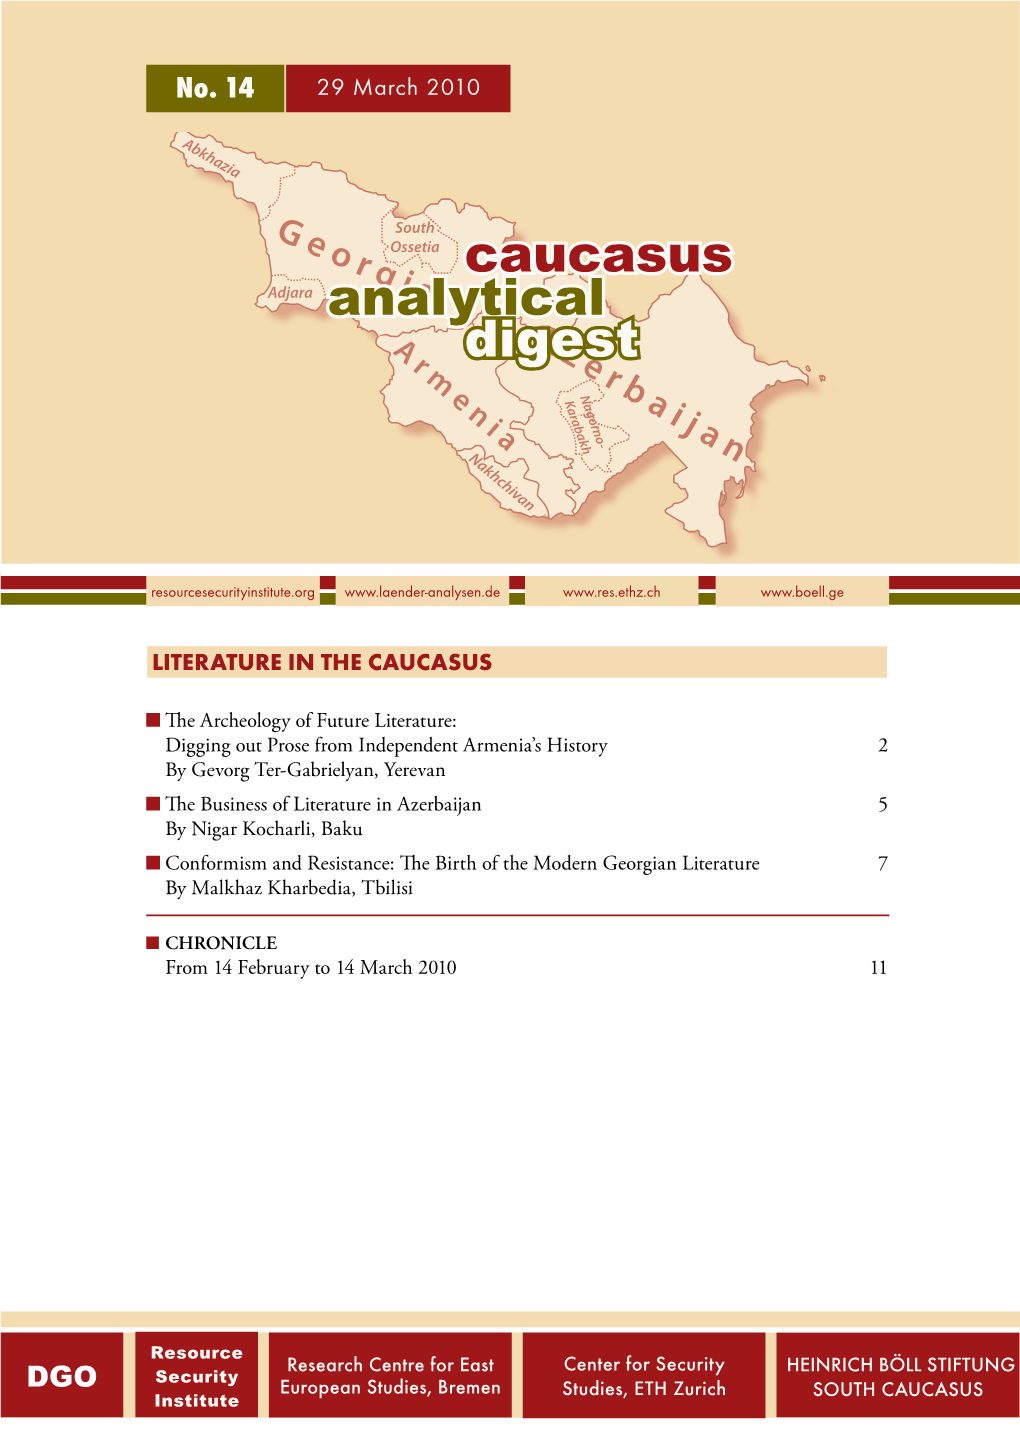 No. 14: Literature in the Caucasus